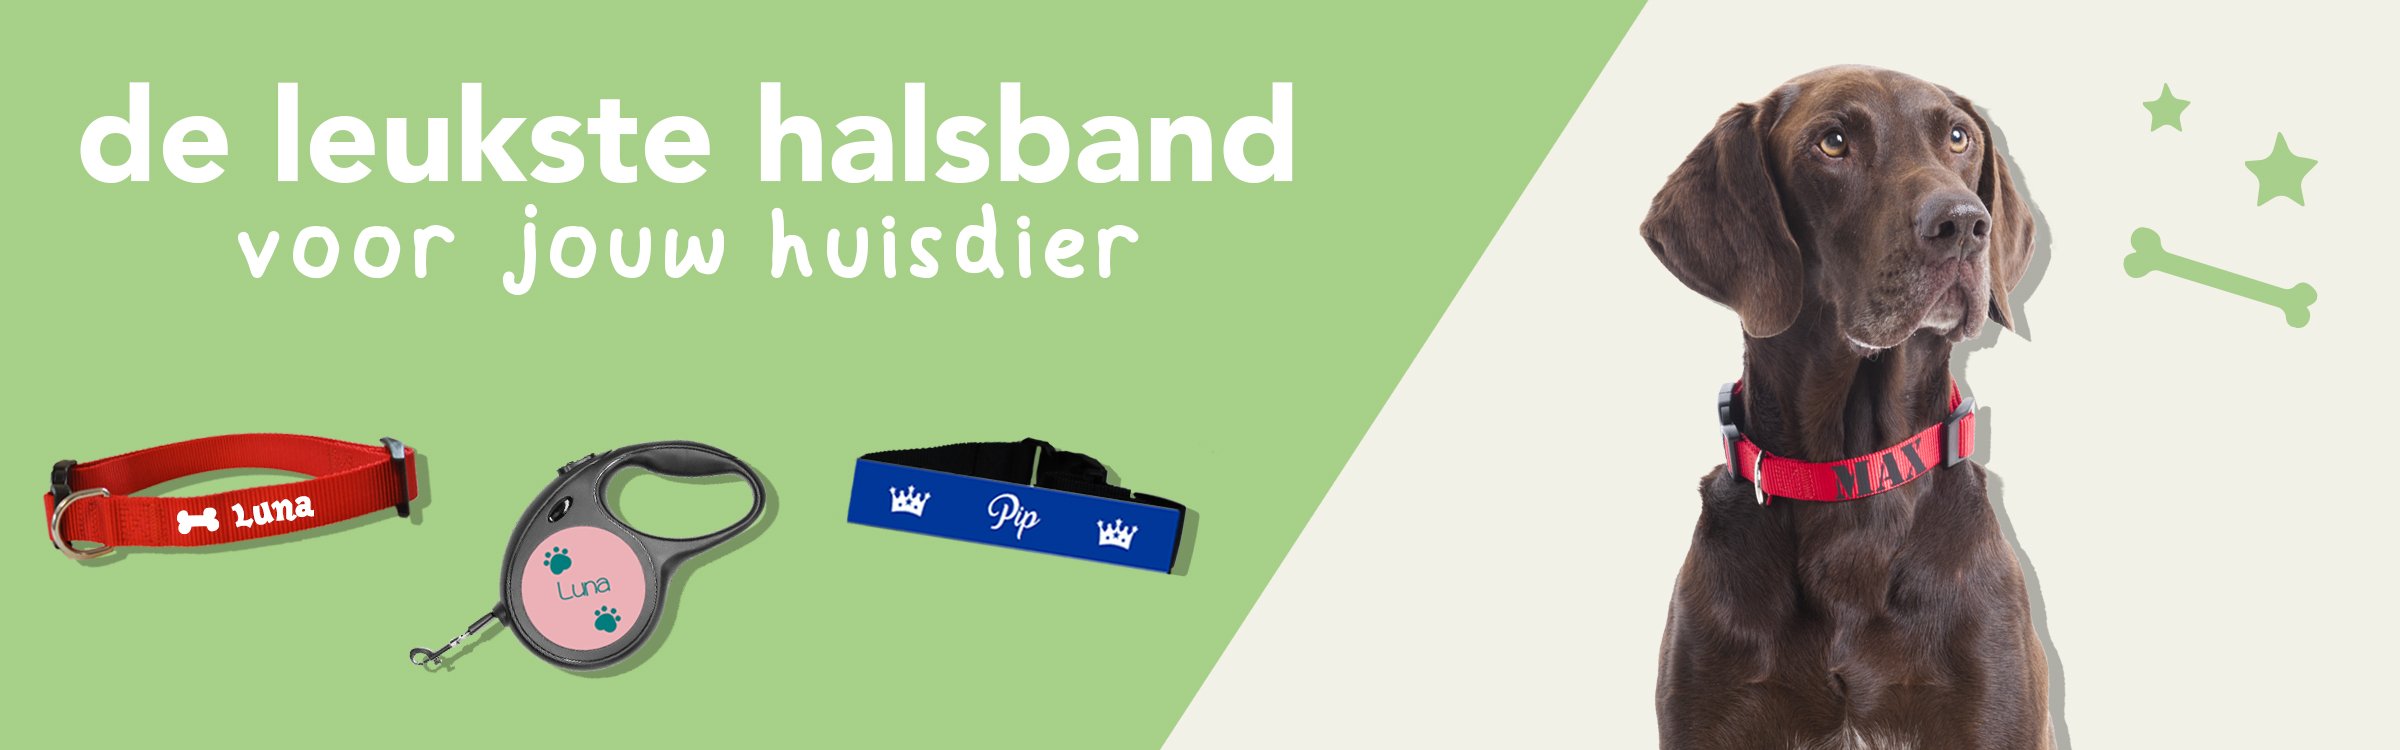 banner-halsband-2400x750